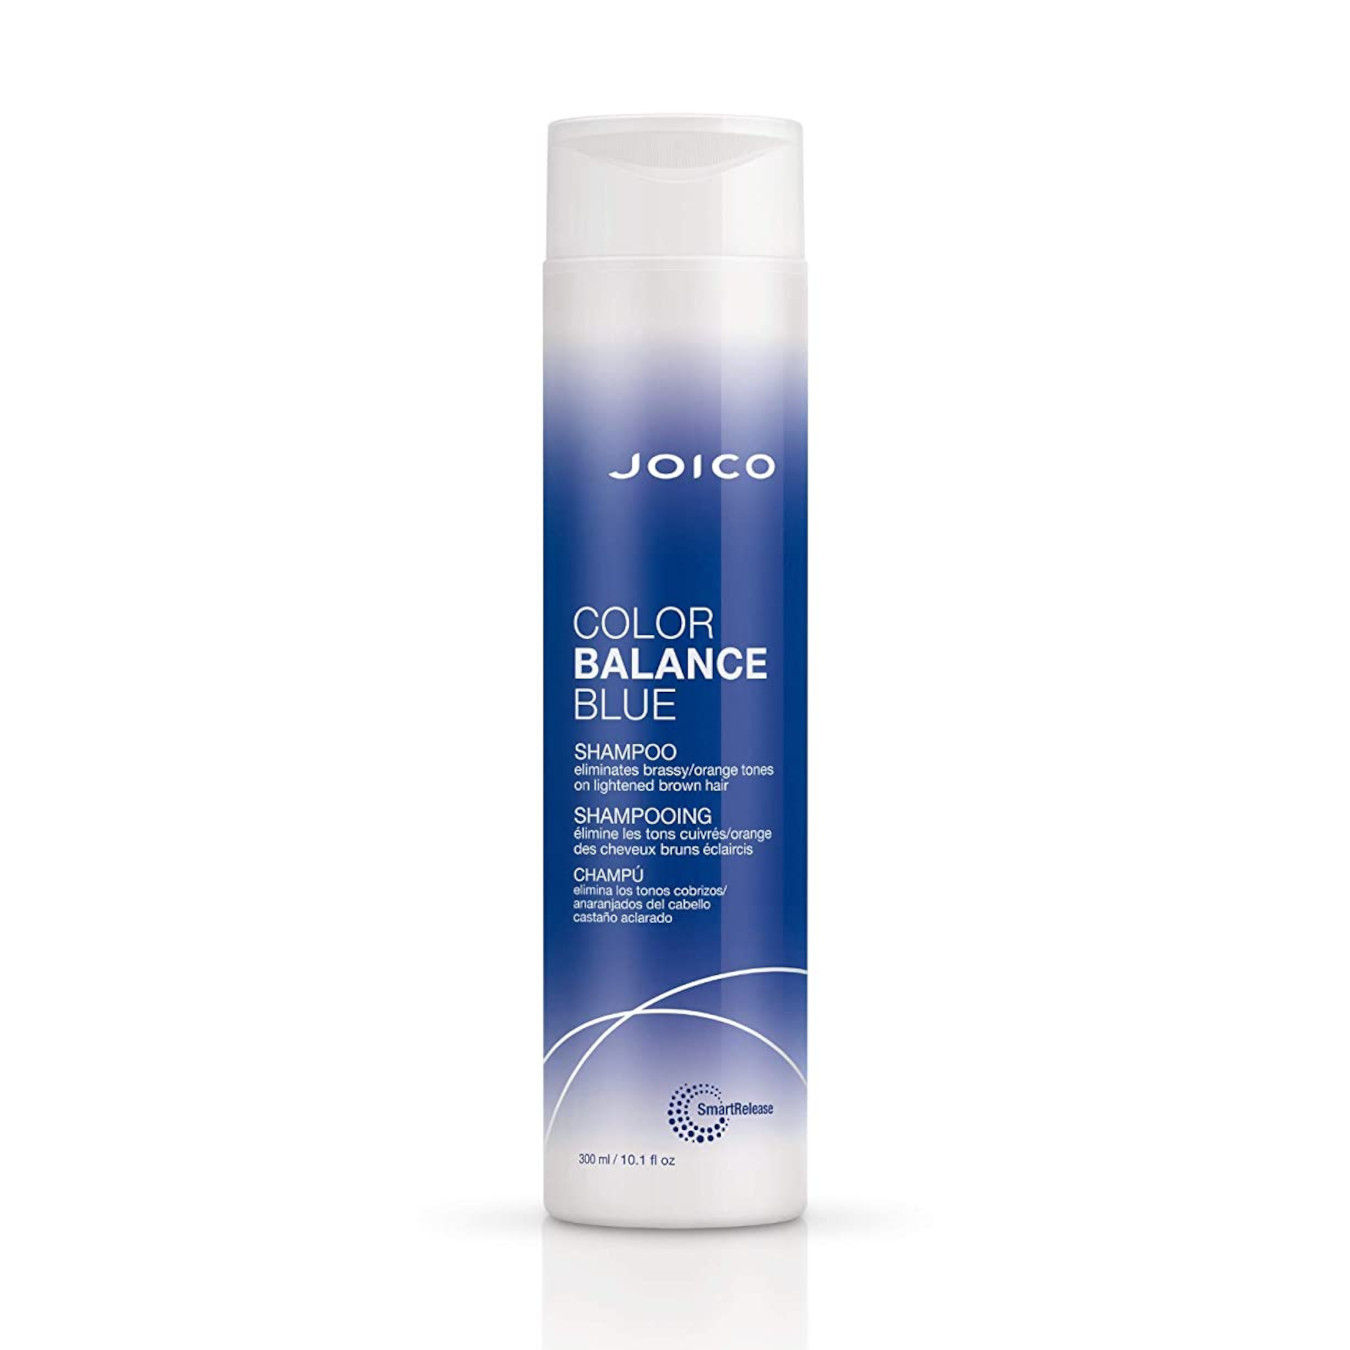 JOICO Color Balance Blue Shampoo